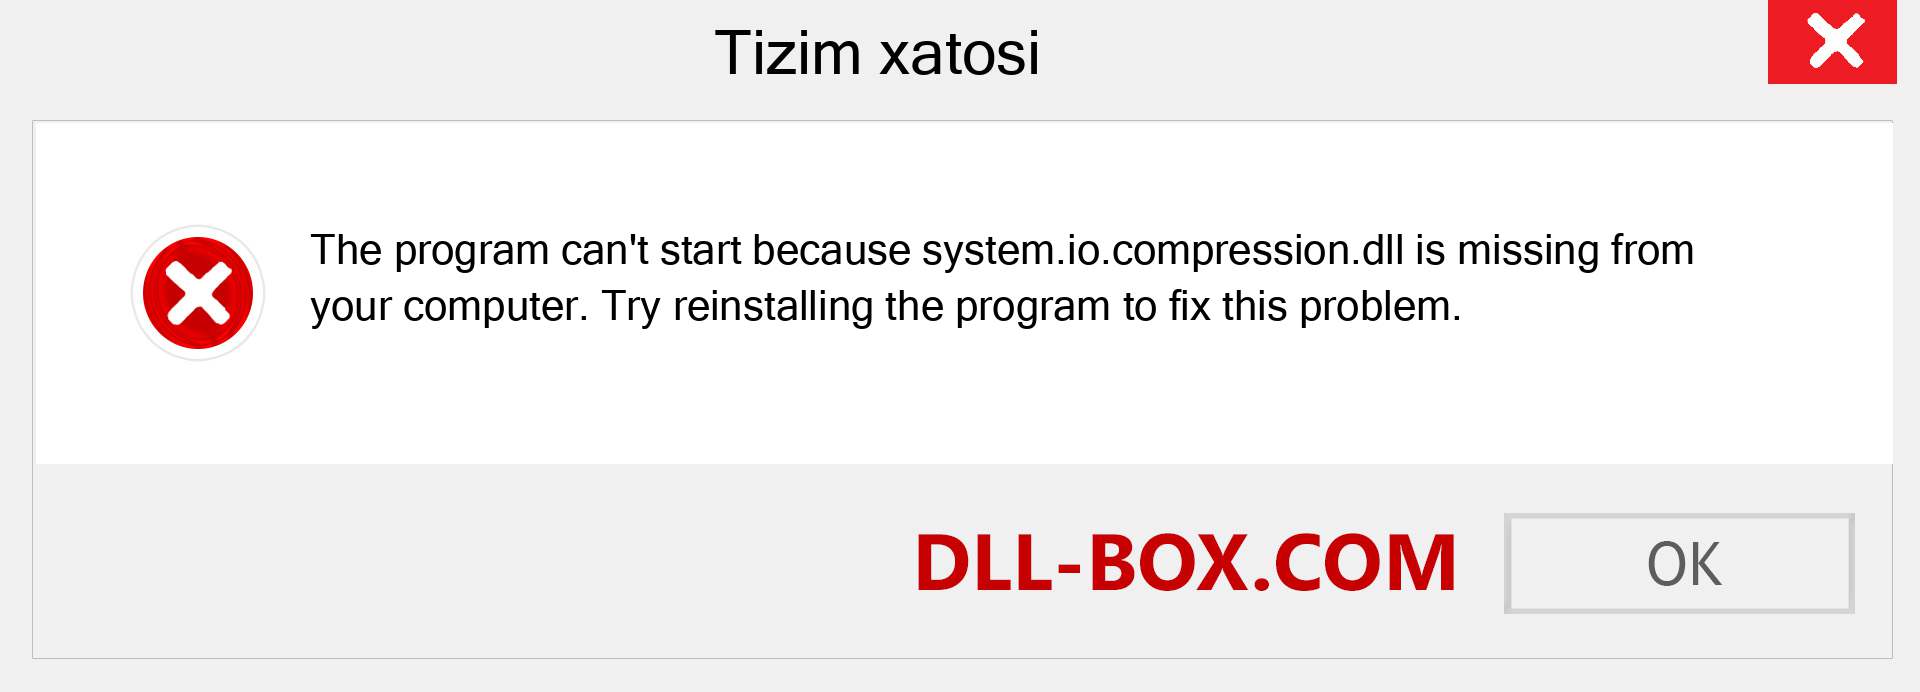 system.io.compression.dll fayli yo'qolganmi?. Windows 7, 8, 10 uchun yuklab olish - Windowsda system.io.compression dll etishmayotgan xatoni tuzating, rasmlar, rasmlar